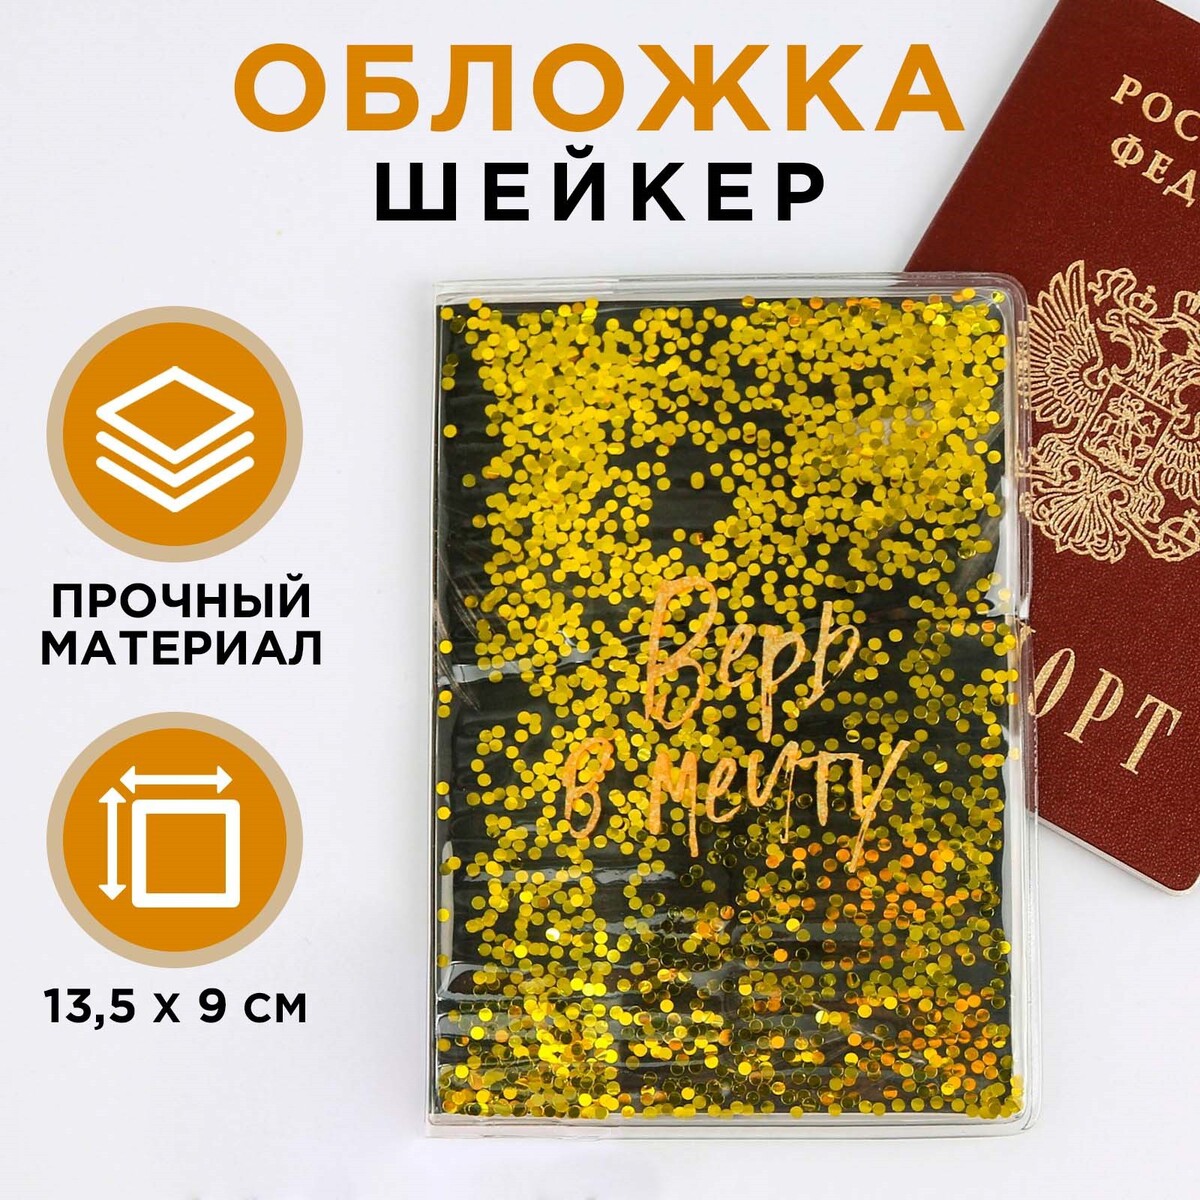 Обложка-шейкер для паспорта